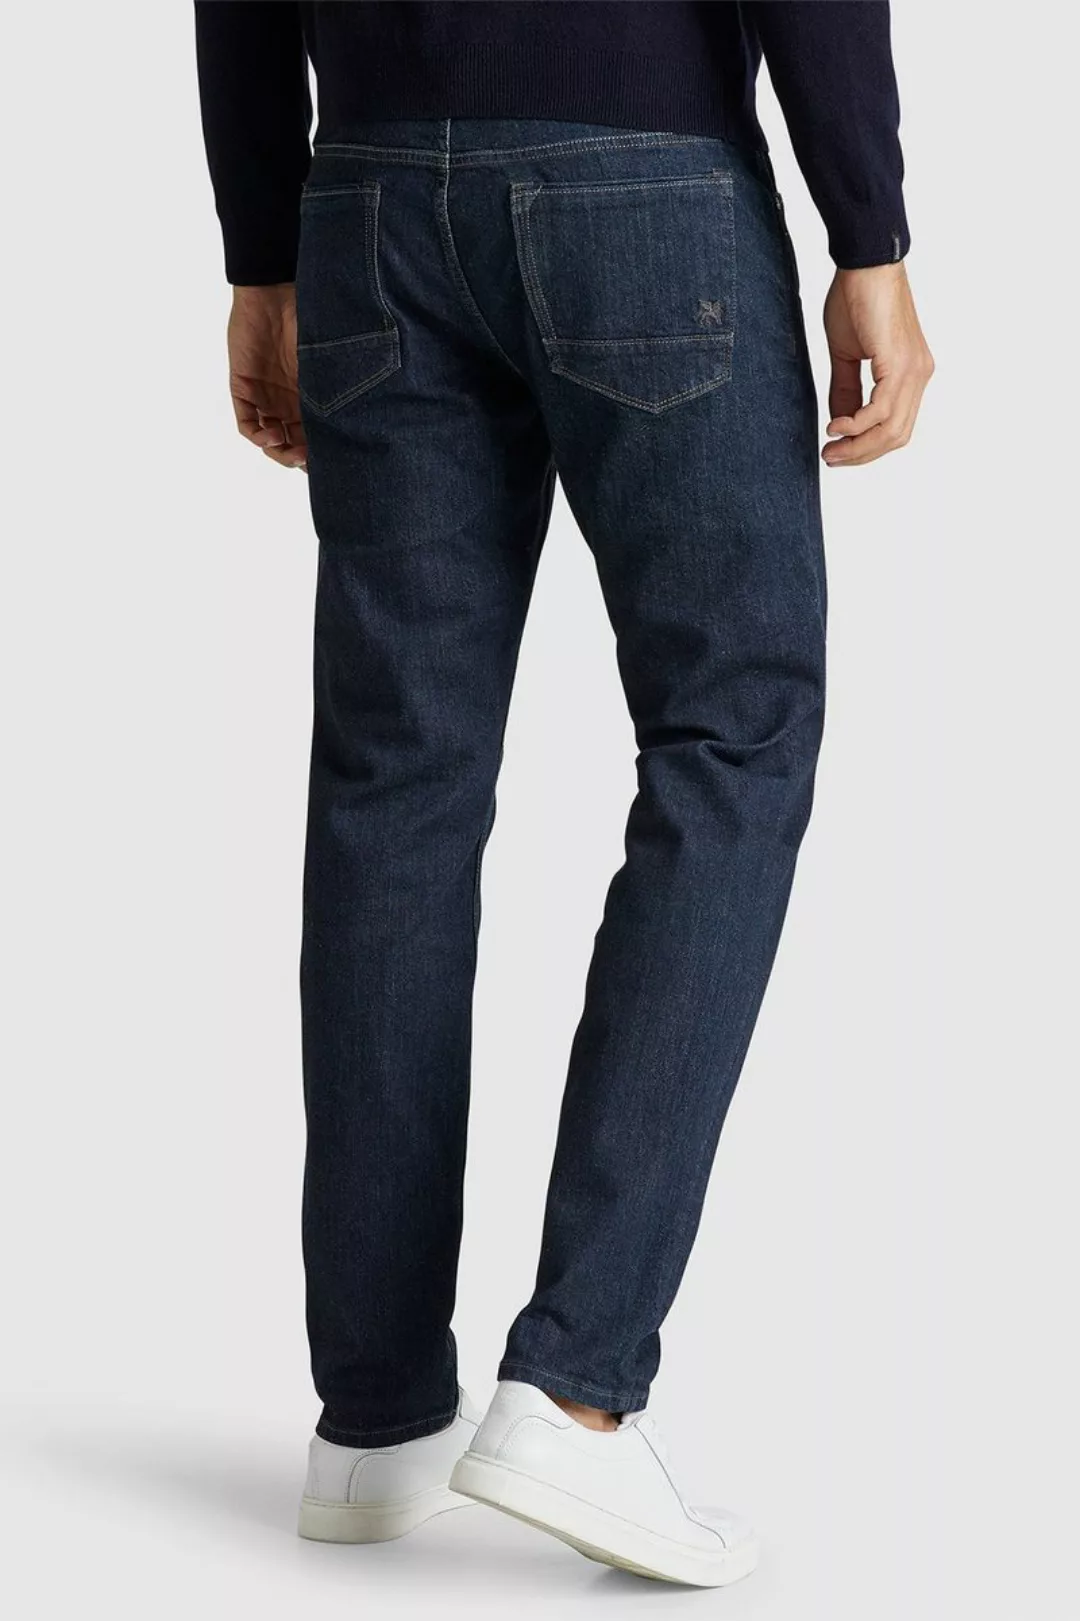 Vanguard Jeans V7 Rider Dunkelblau - Größe W 35 - L 30 günstig online kaufen